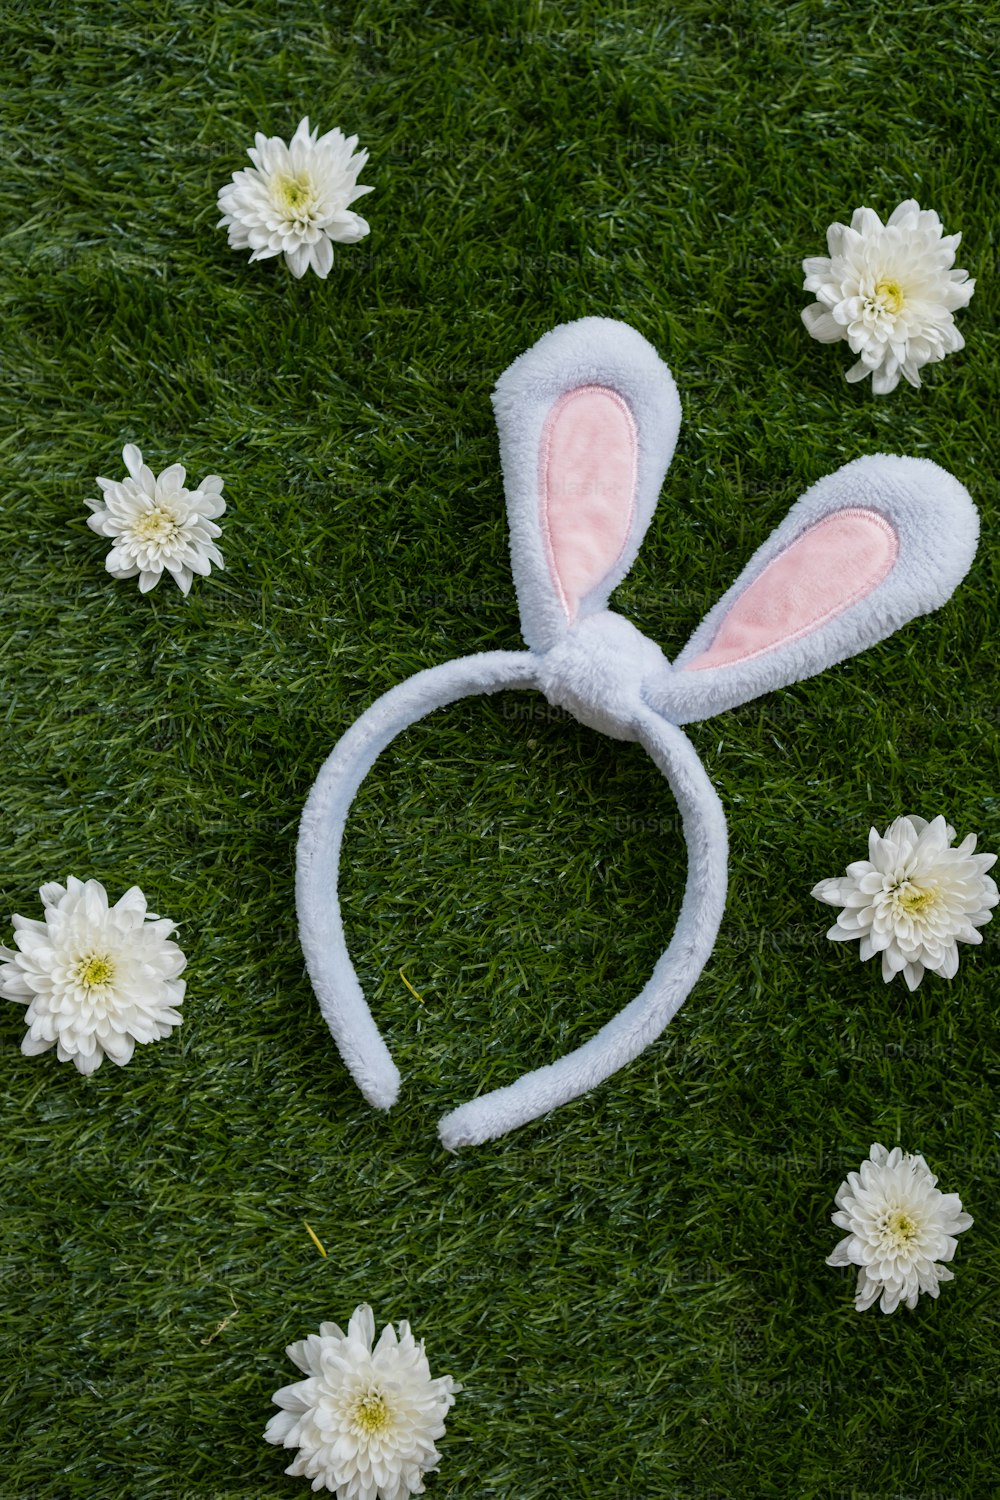 풀밭 위에 누워 있는 토끼 귀 머리띠